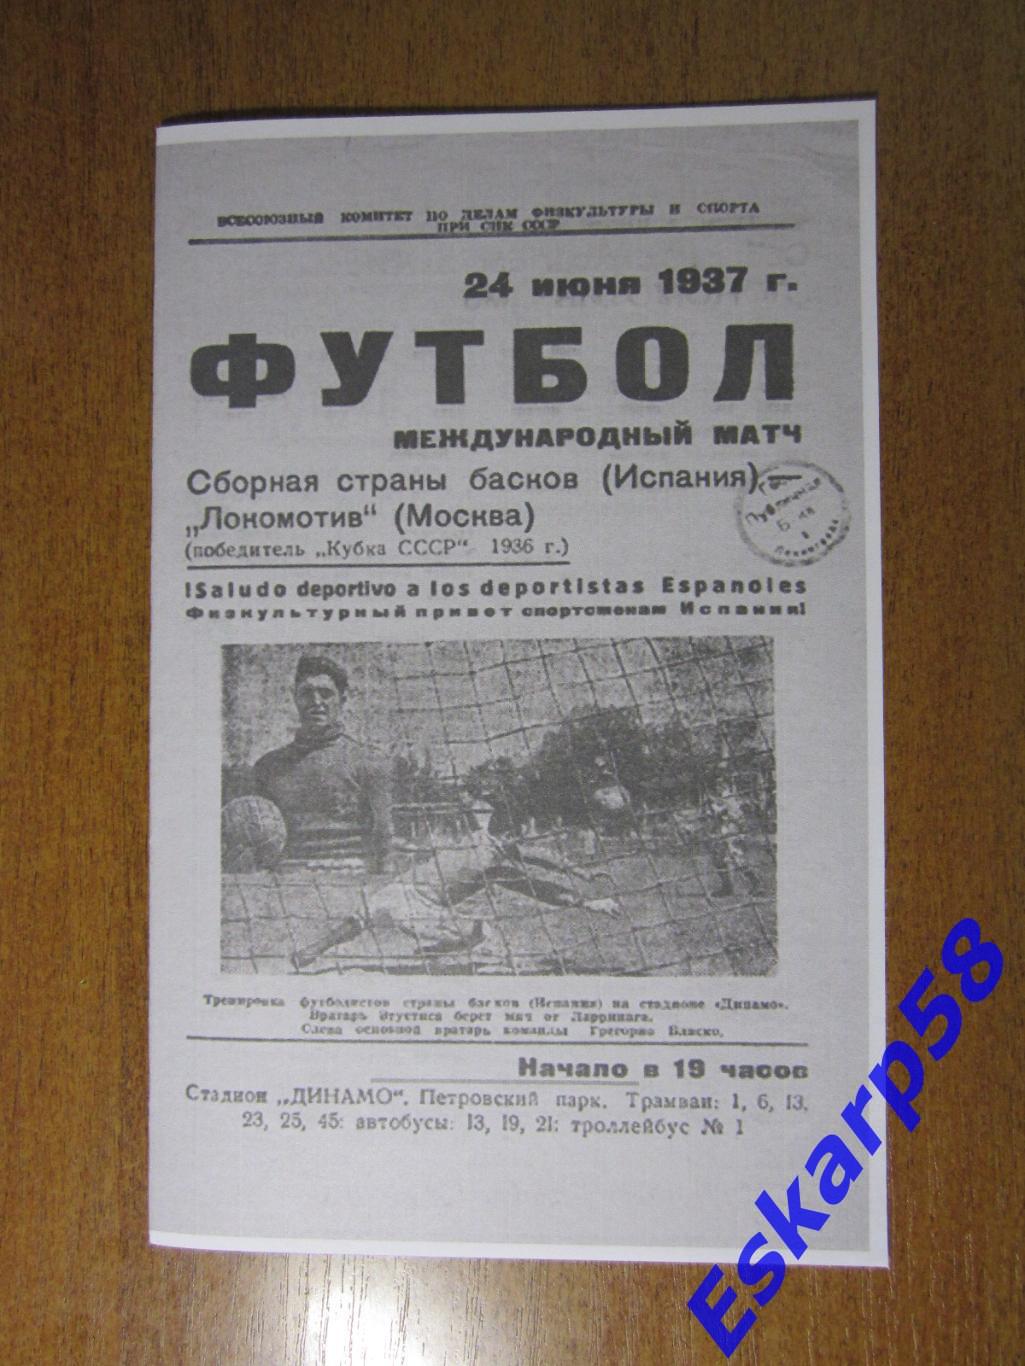 1937.ЛокомотивМосква - сб.страныбасков